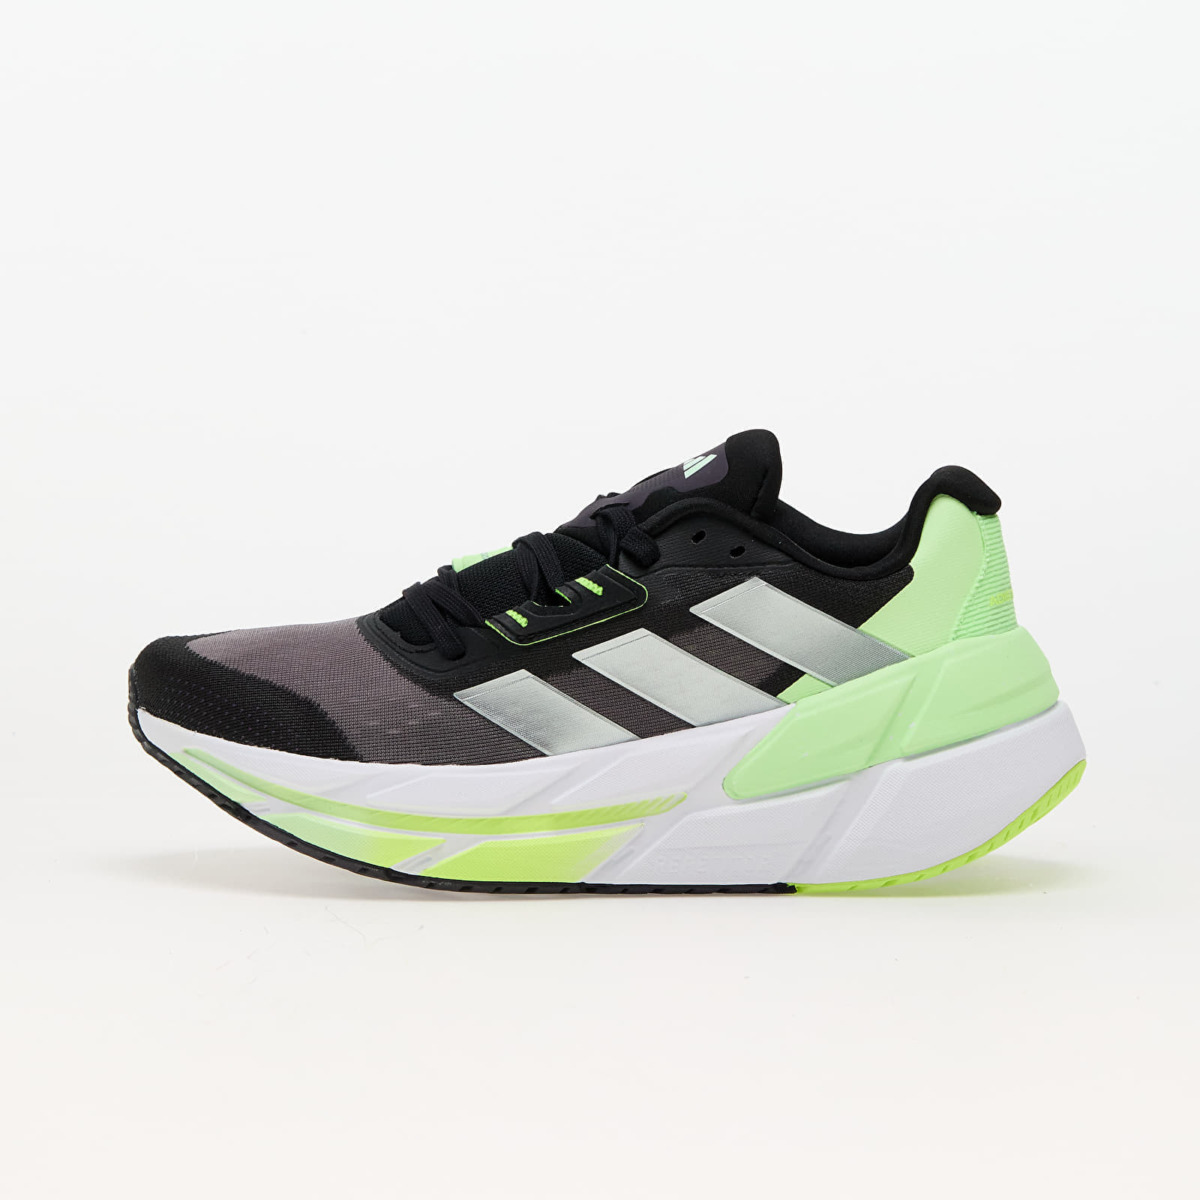 Footshop - Grey - Adistar Running Shoes - Adidas GOOFASH